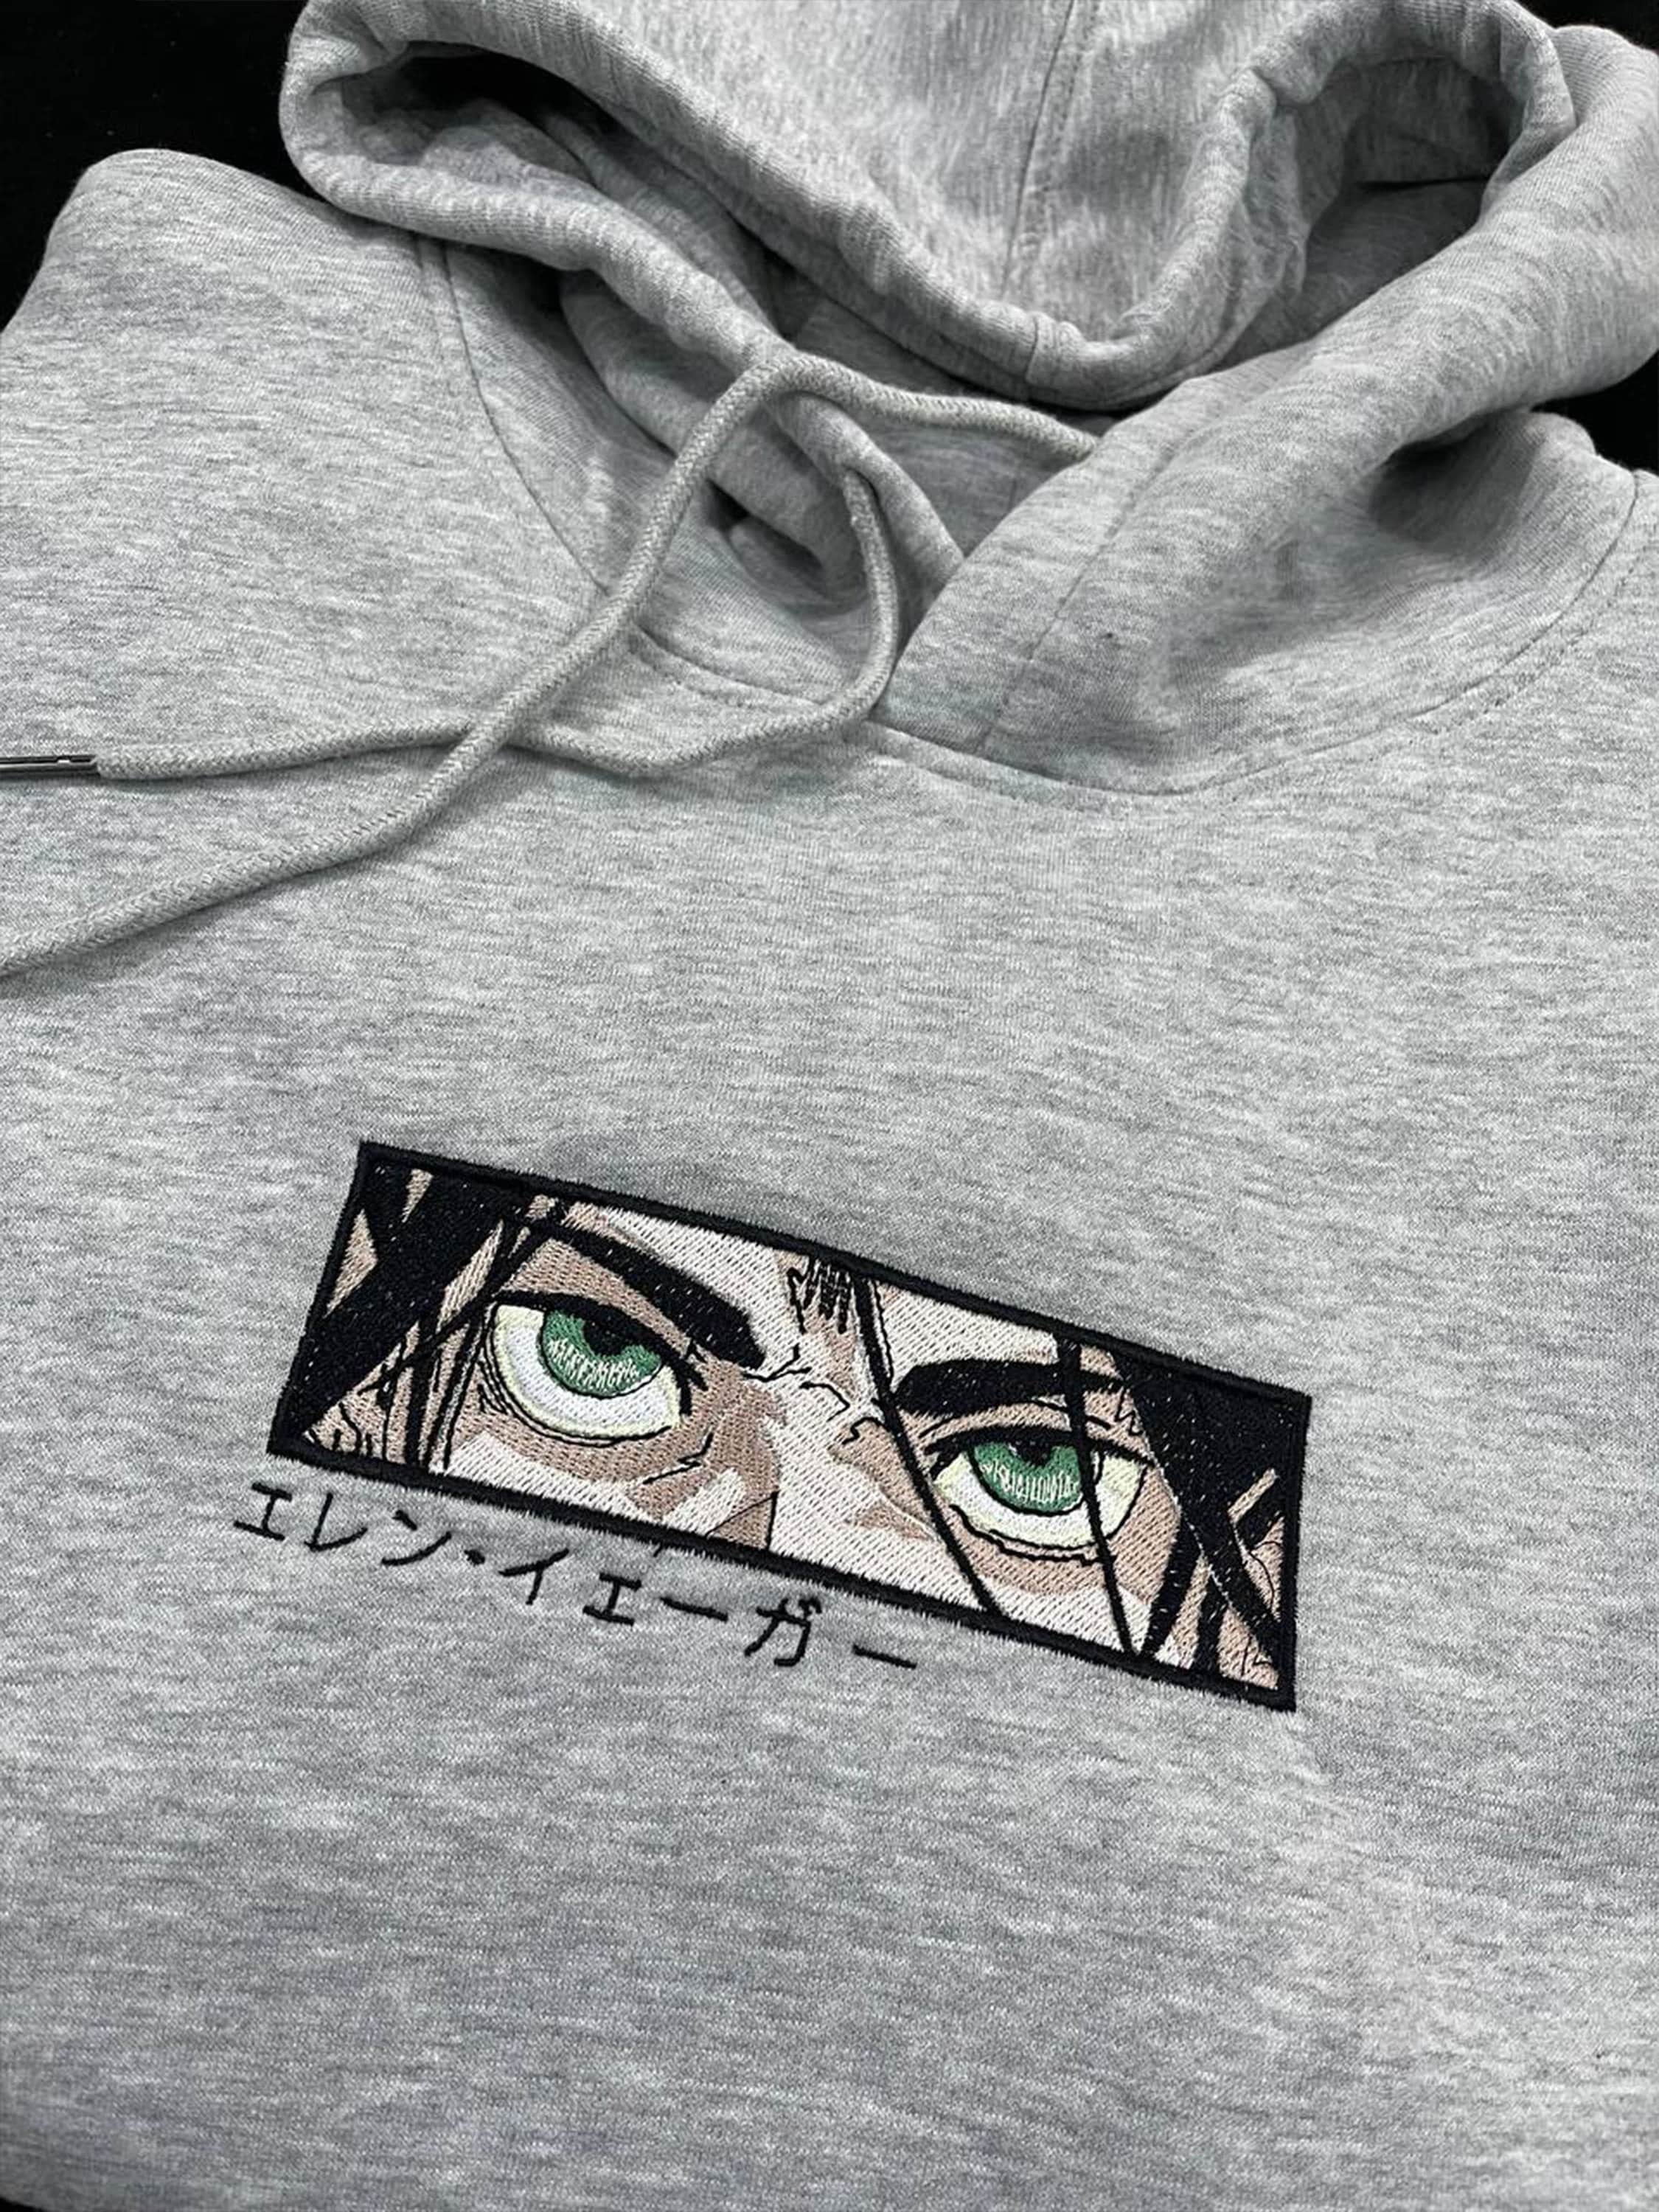 Anime Embroidered Sweatshirt, Embroidered Anime Shirt, Anime Shirt,  Embroidered Shirt, Embroidered Hoodie, Anime Tee ETITA071 - Etsy